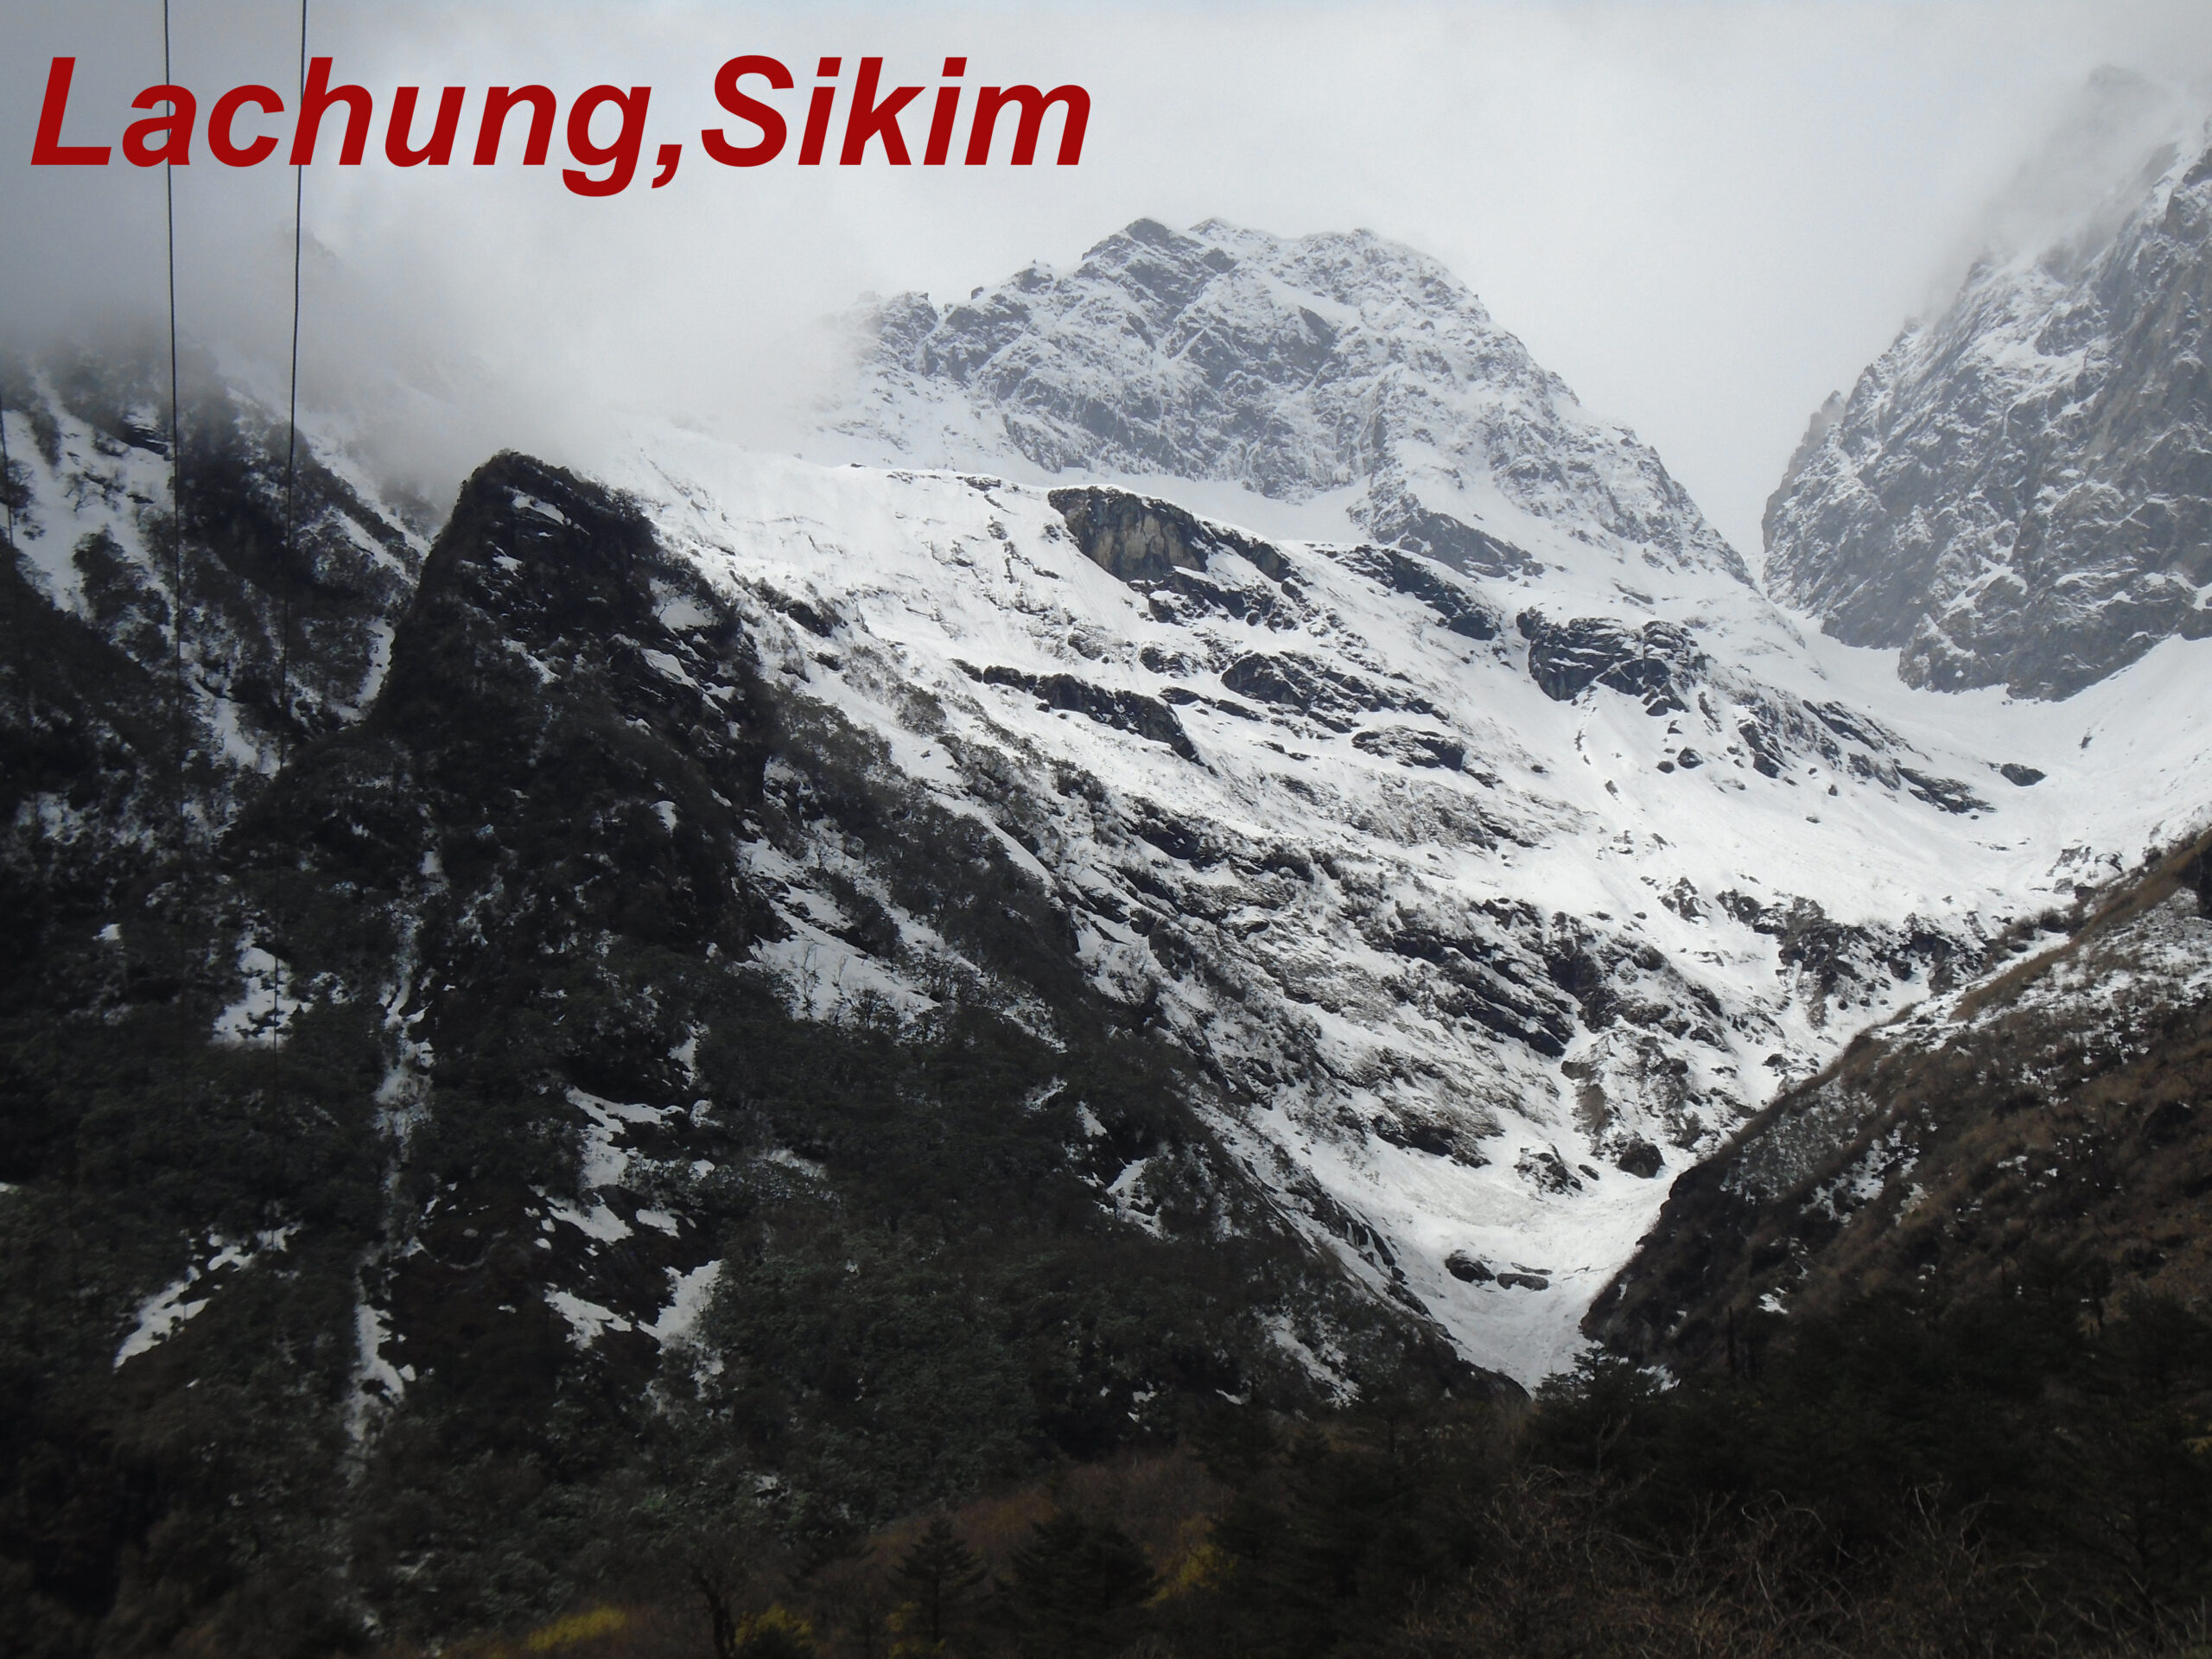 India Sikim Tour